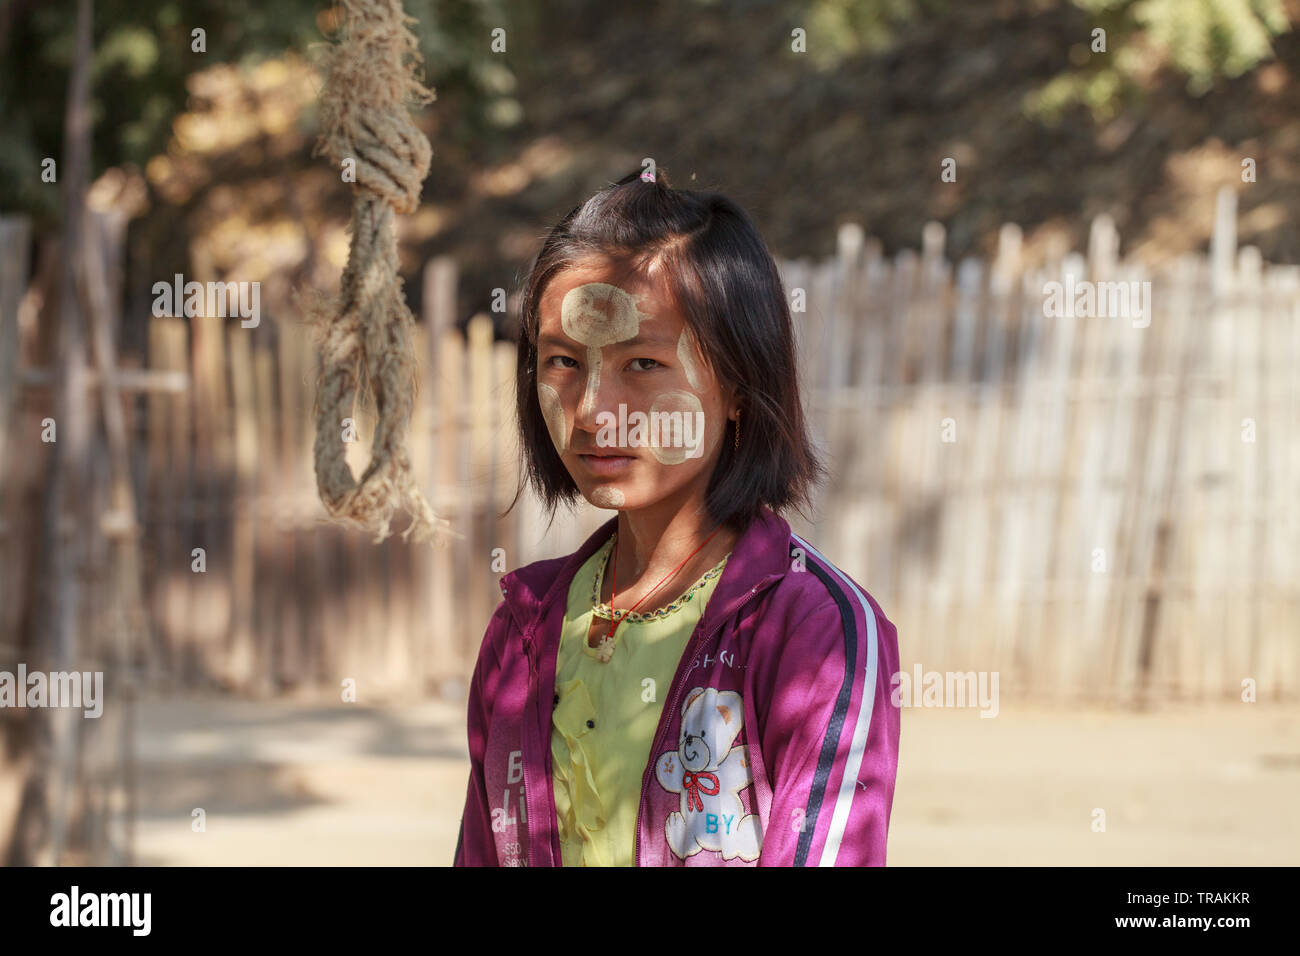 La vita nel villaggio: il ritratto di una giovane ragazza con tipico trucco birmano Foto Stock